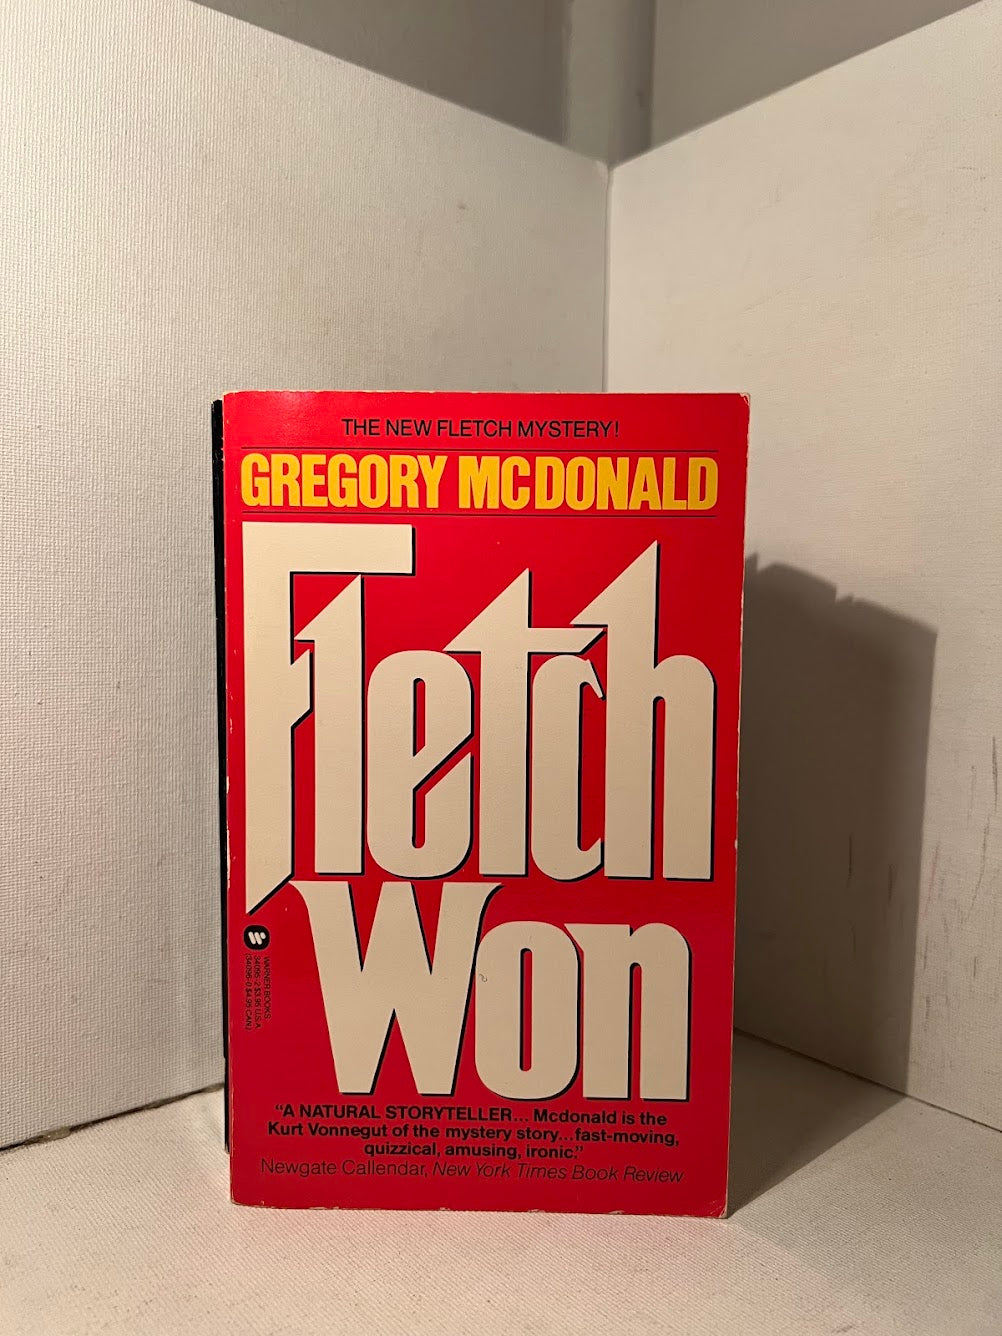 3 Fletch novels by Gregory McDonald